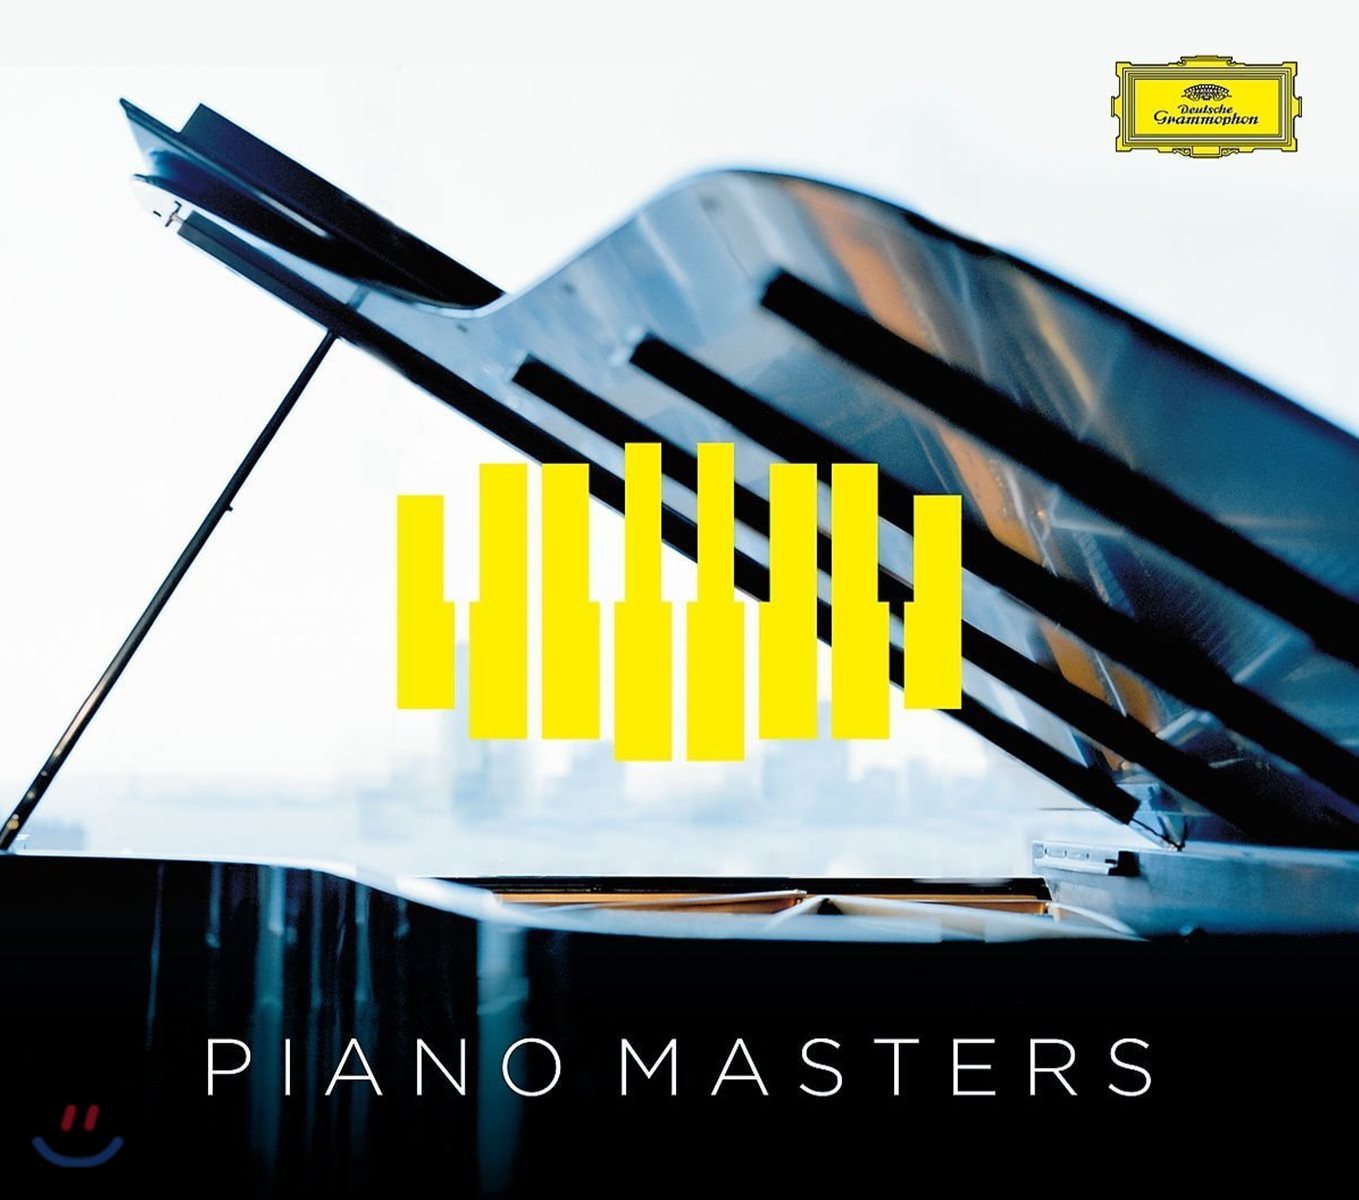 피아노 마스터스 - DG 레이블 피아노 명연주 모음집 (Piano Masters)